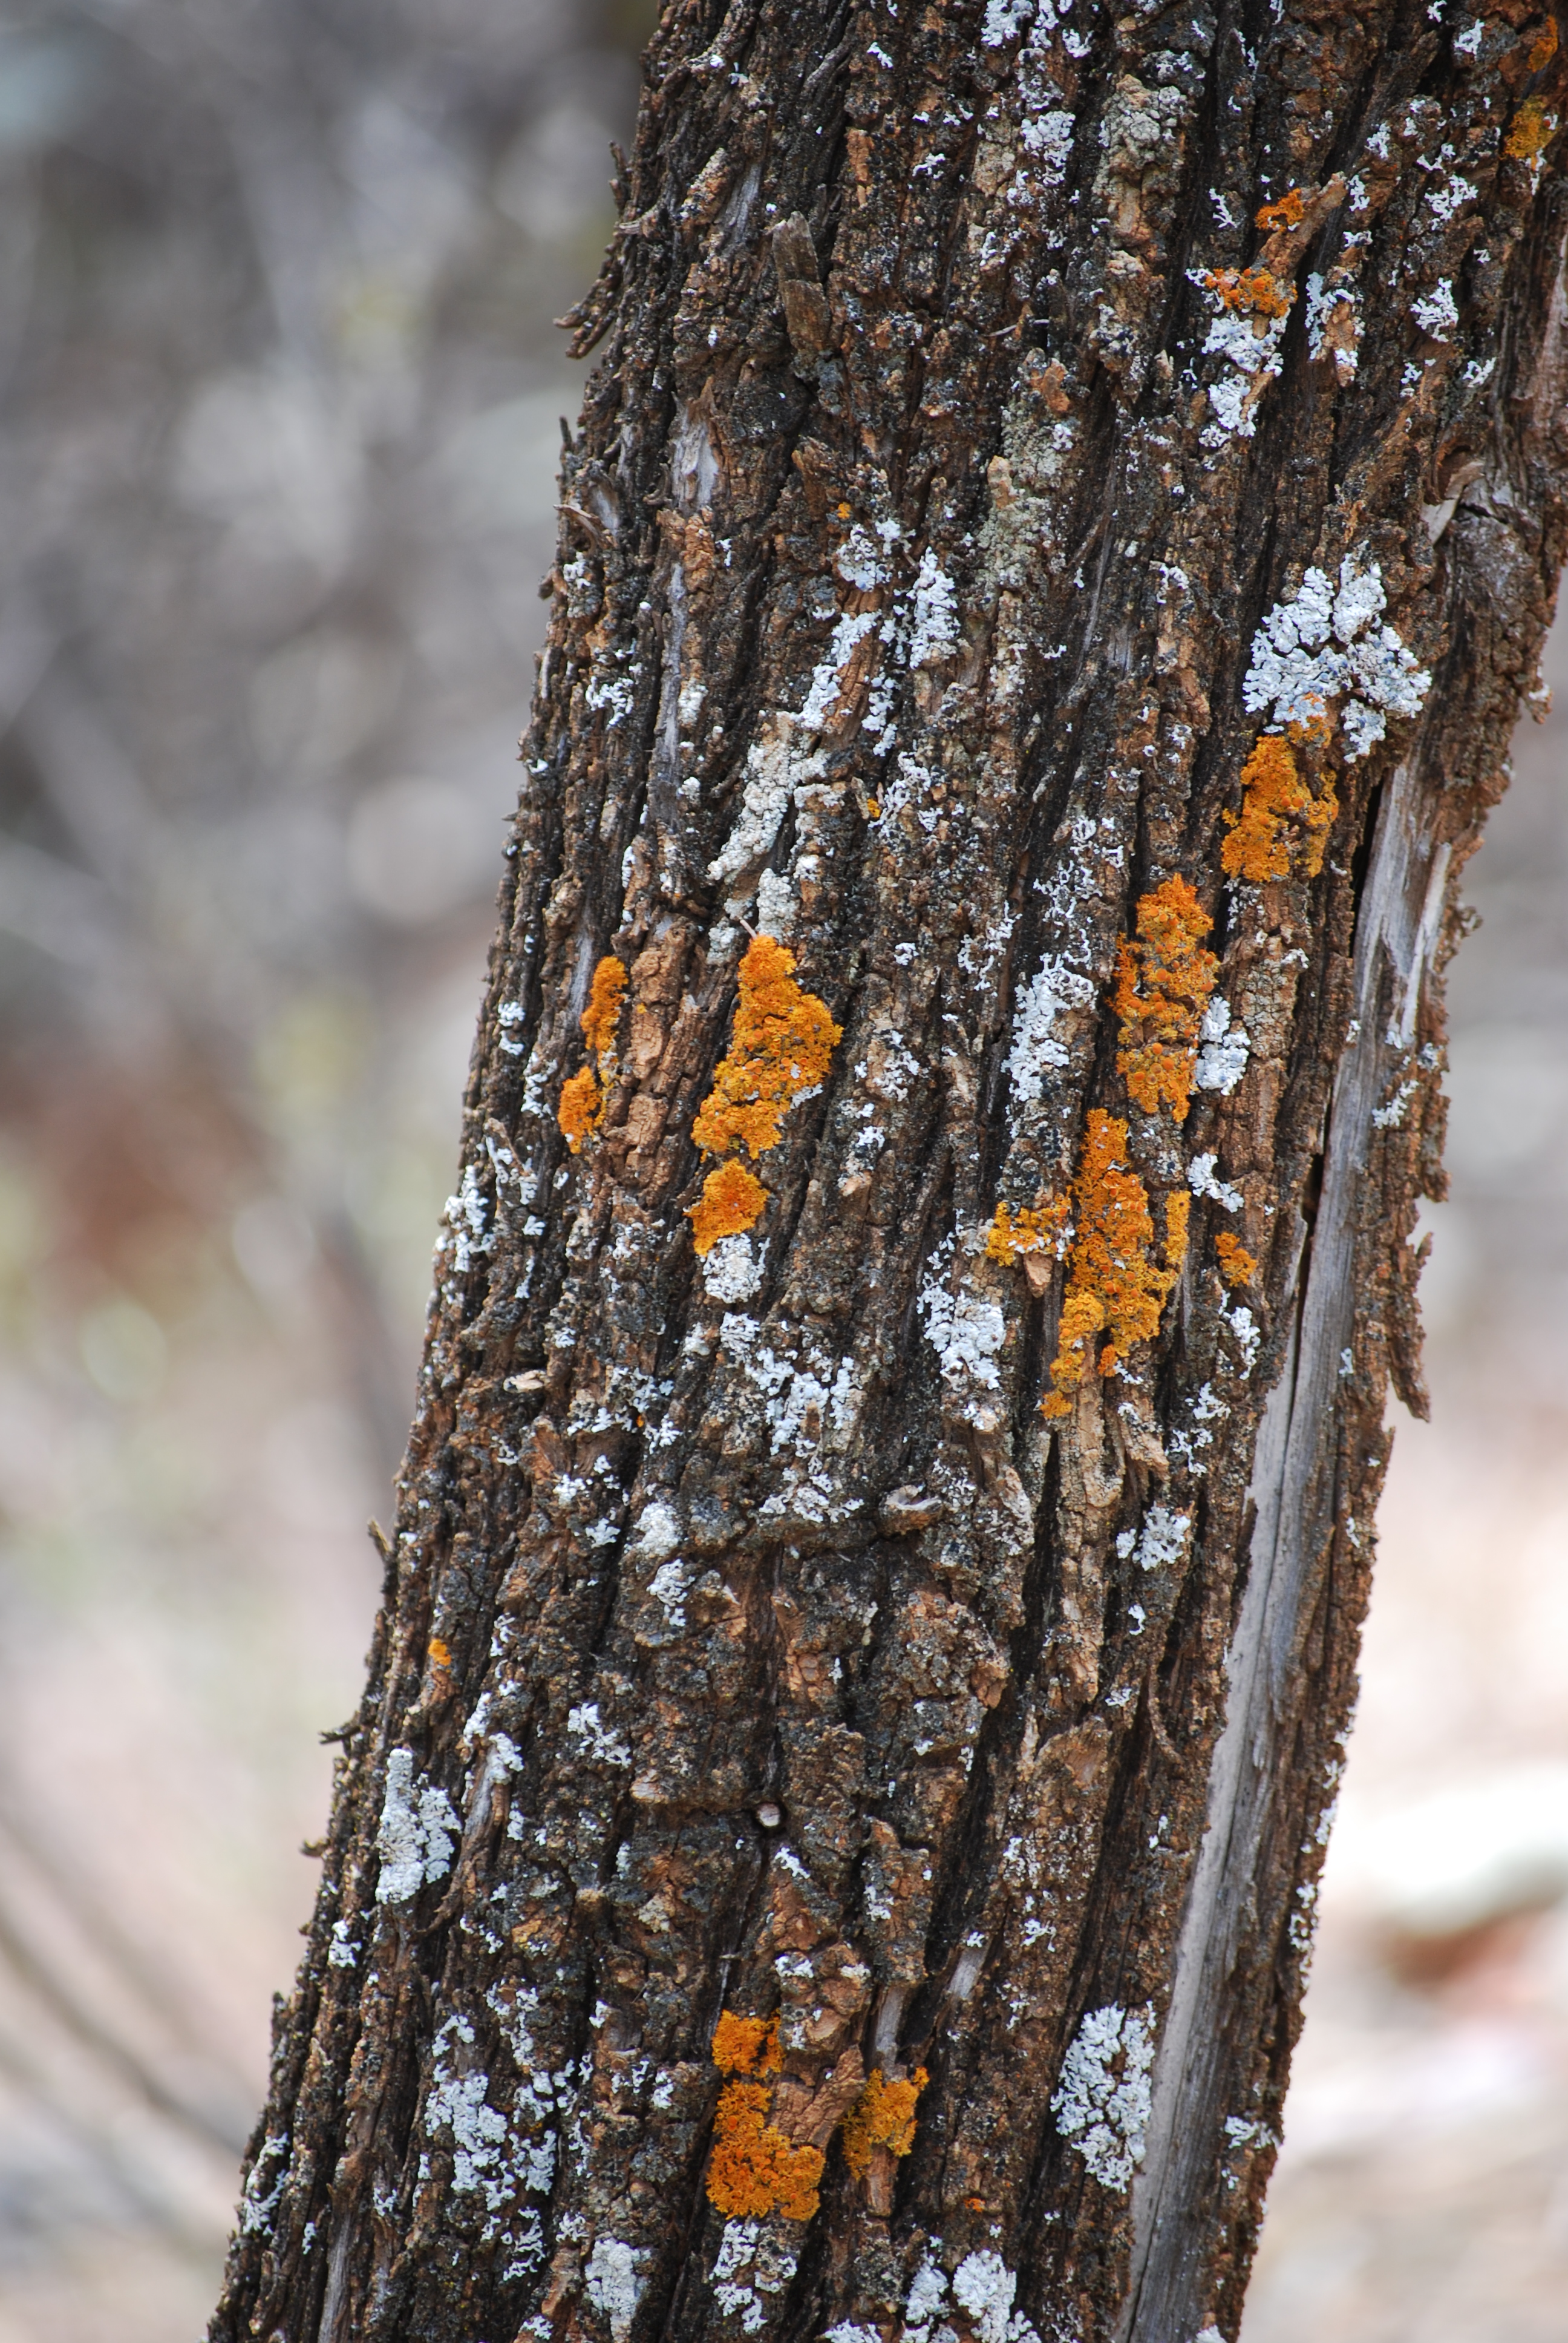 Callitris columellaris bark with lichen